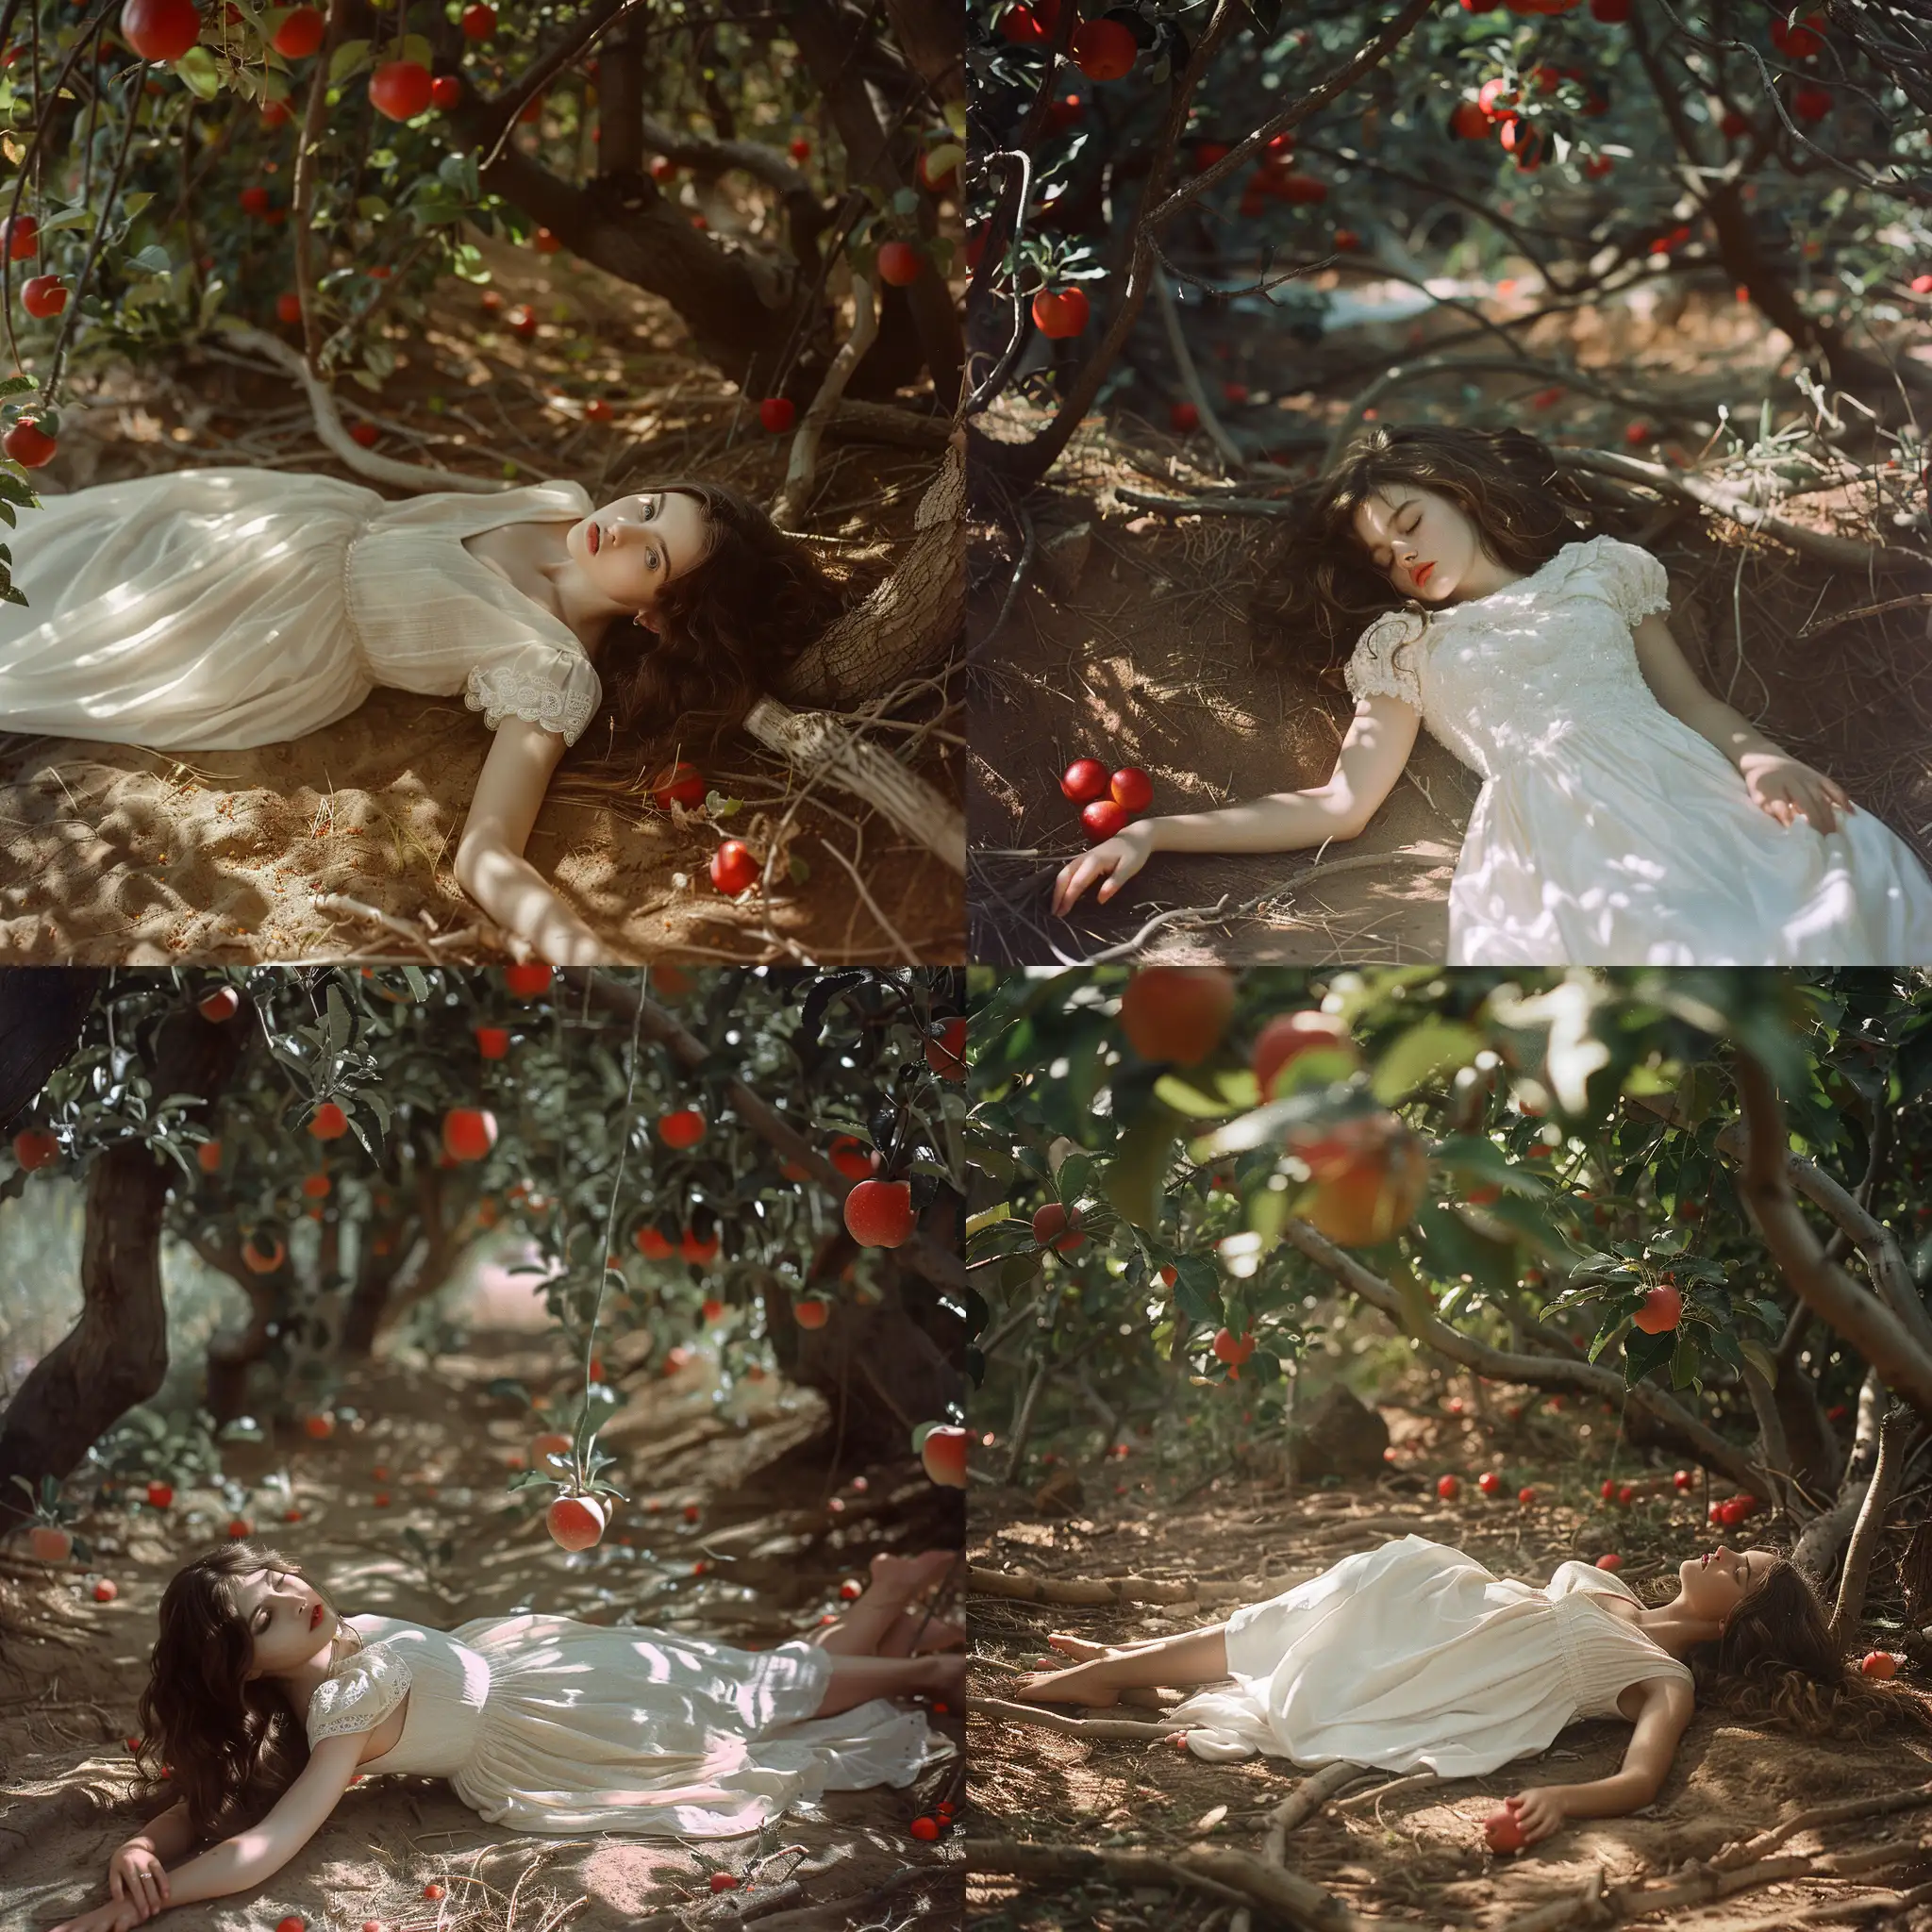 Девушка в простом белом платье лежит под кронами деревьев на голой земле, распущенные волосы, голые плечи, босиком, волшебный лес, на деревьях растут красные яблоки, 8k, плёночная фотография, блики солнца на руках и лице девушки, стилистика иллюстраций Алана Ли 